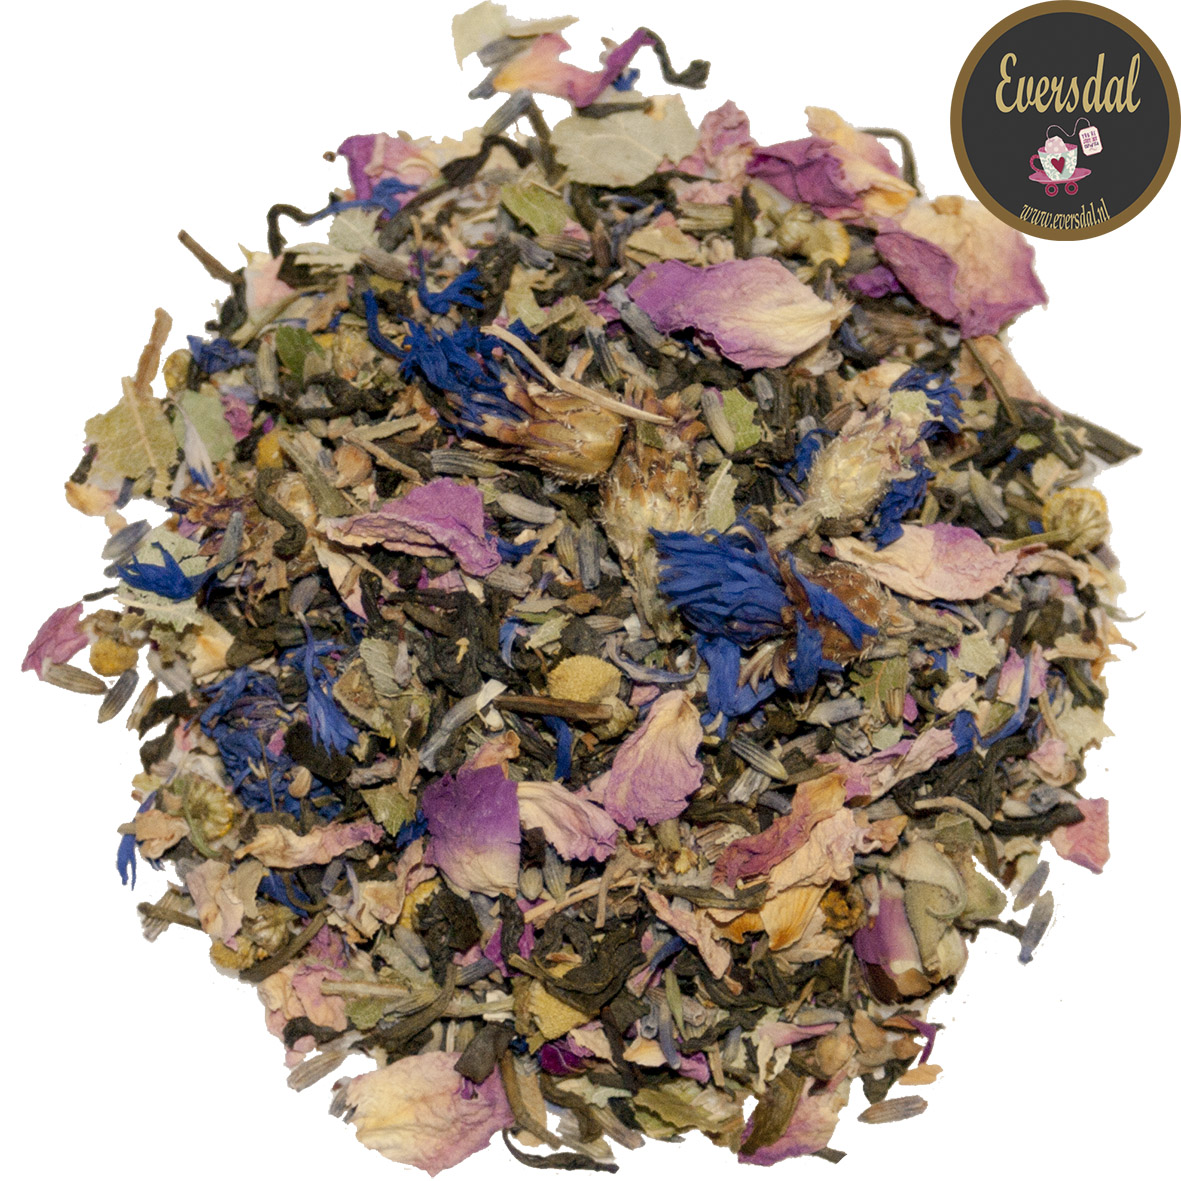 Bloementuintje - BESTSELLER 20% KORTING - groene thee met rozenblad, lavendel, lindebloesem